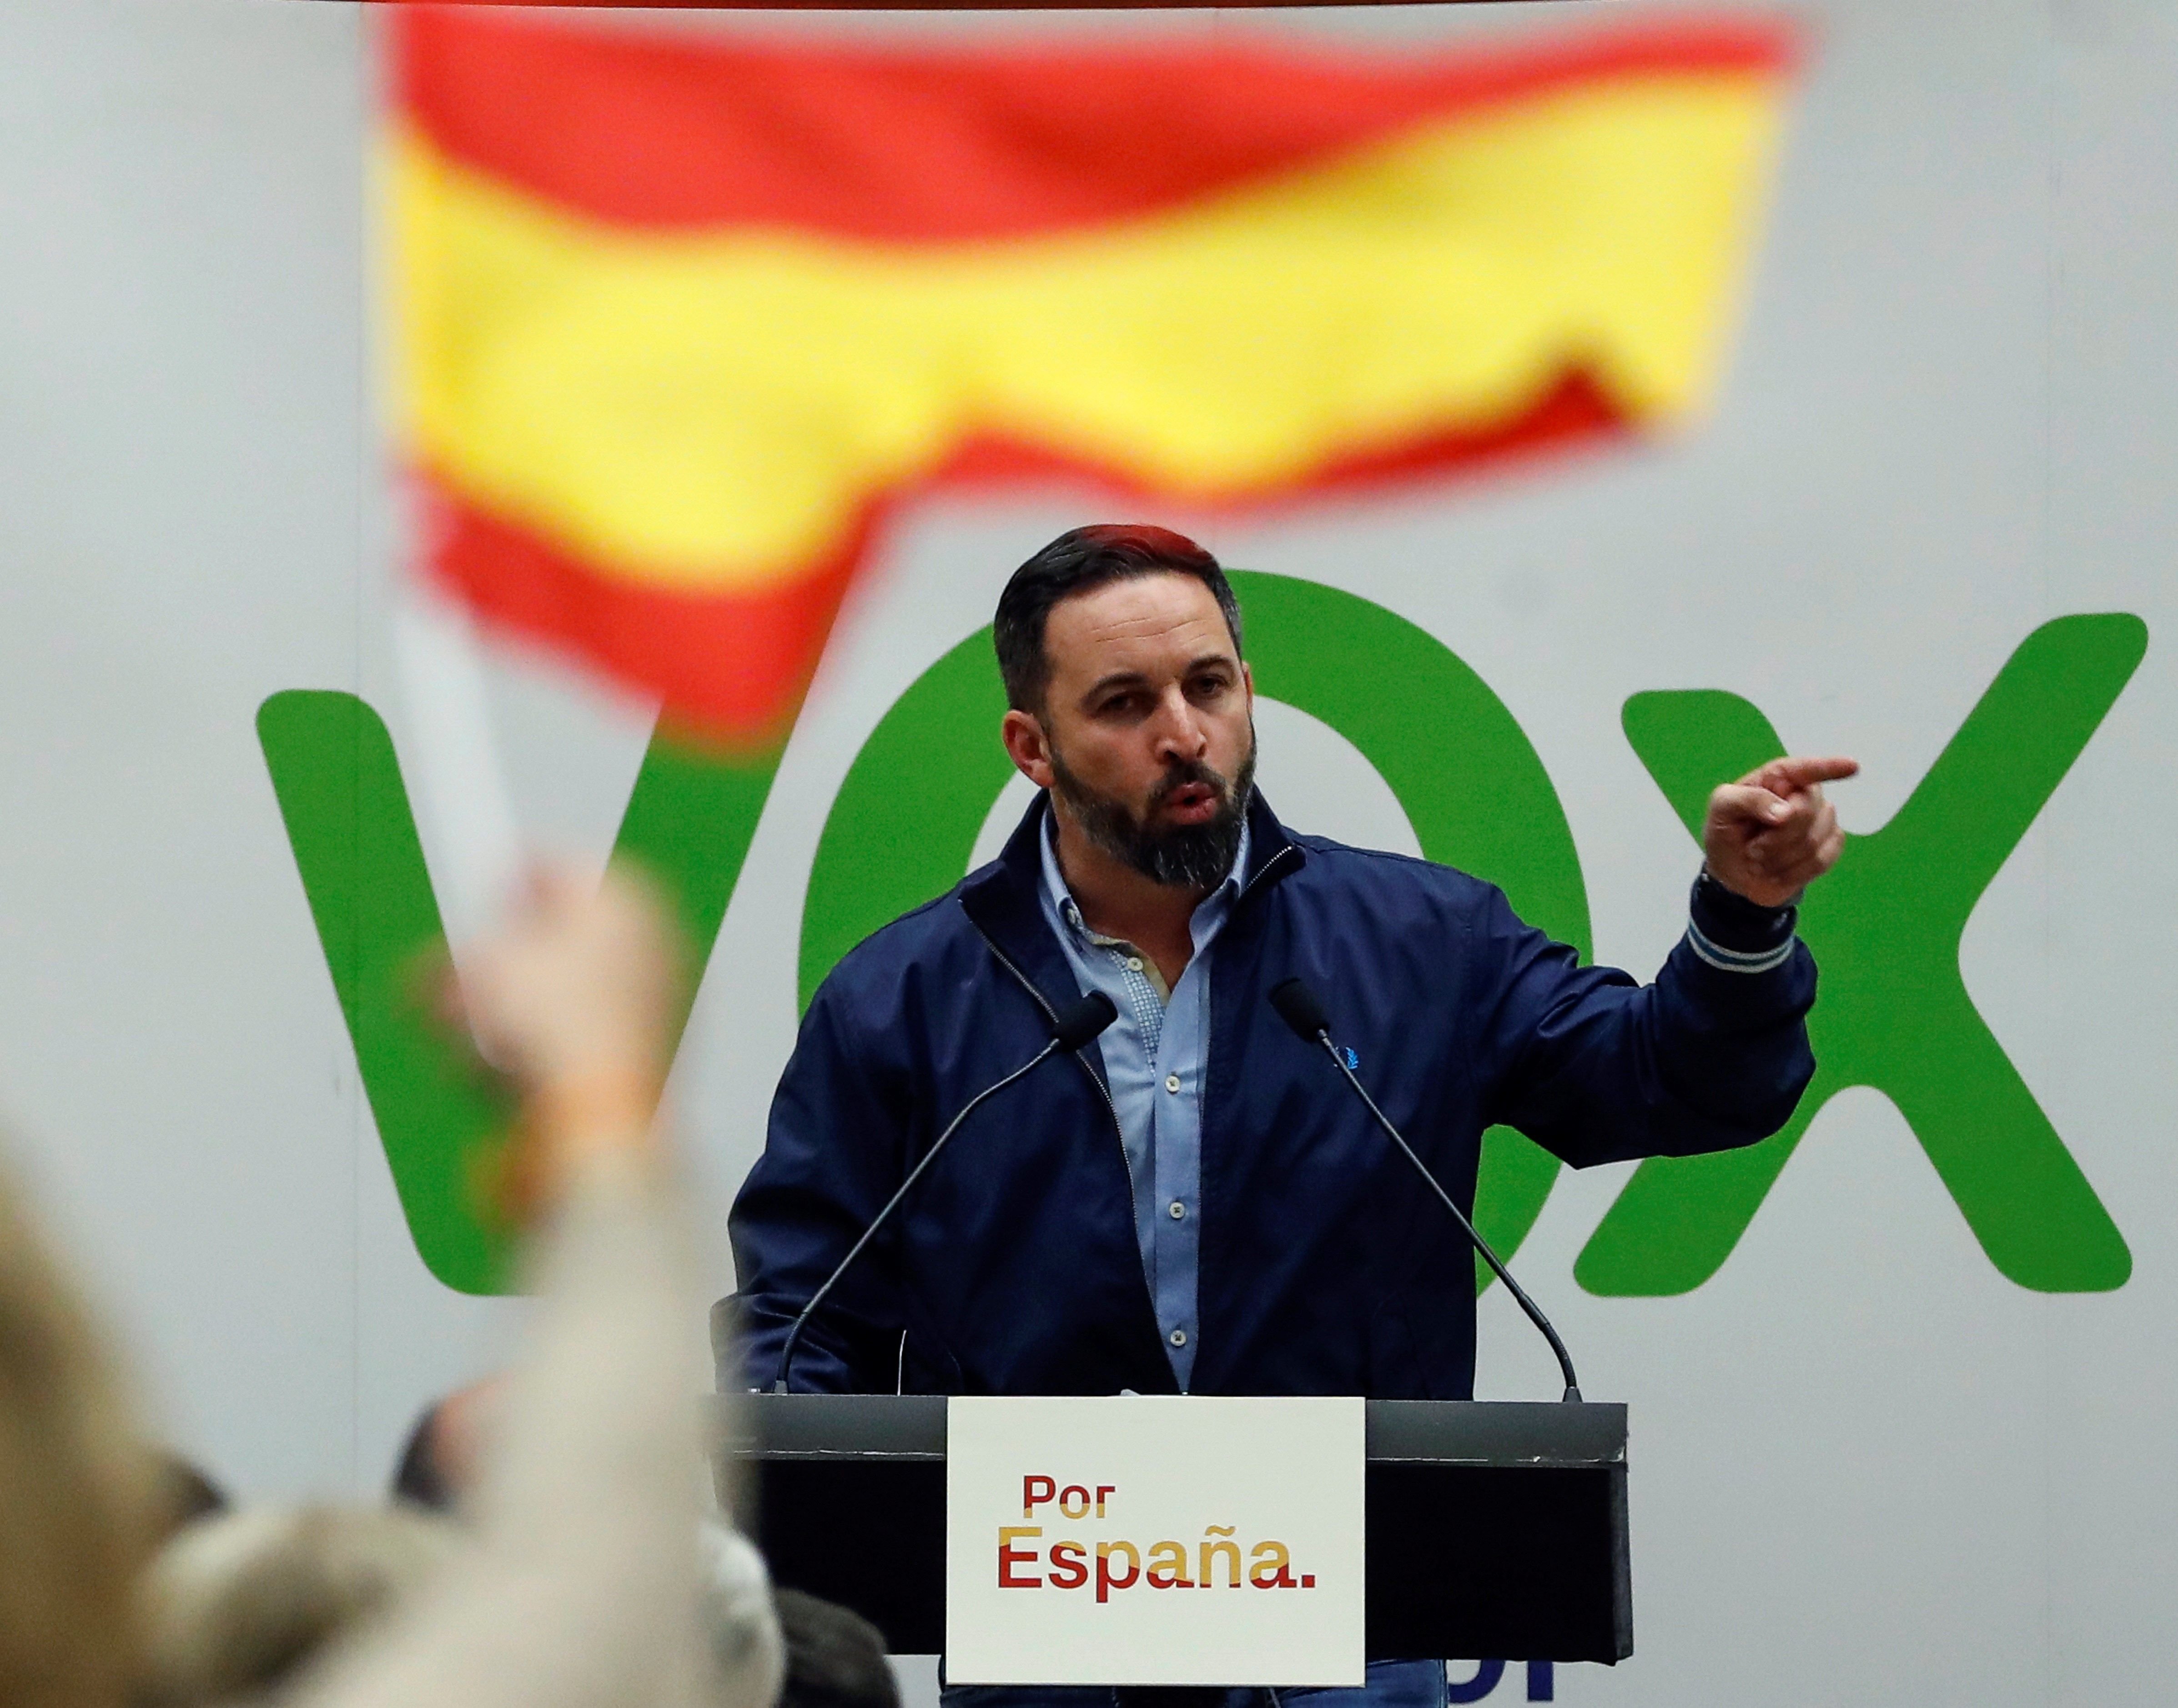 Creus que la prioritat és evitar un govern d'ultradreta a Madrid?